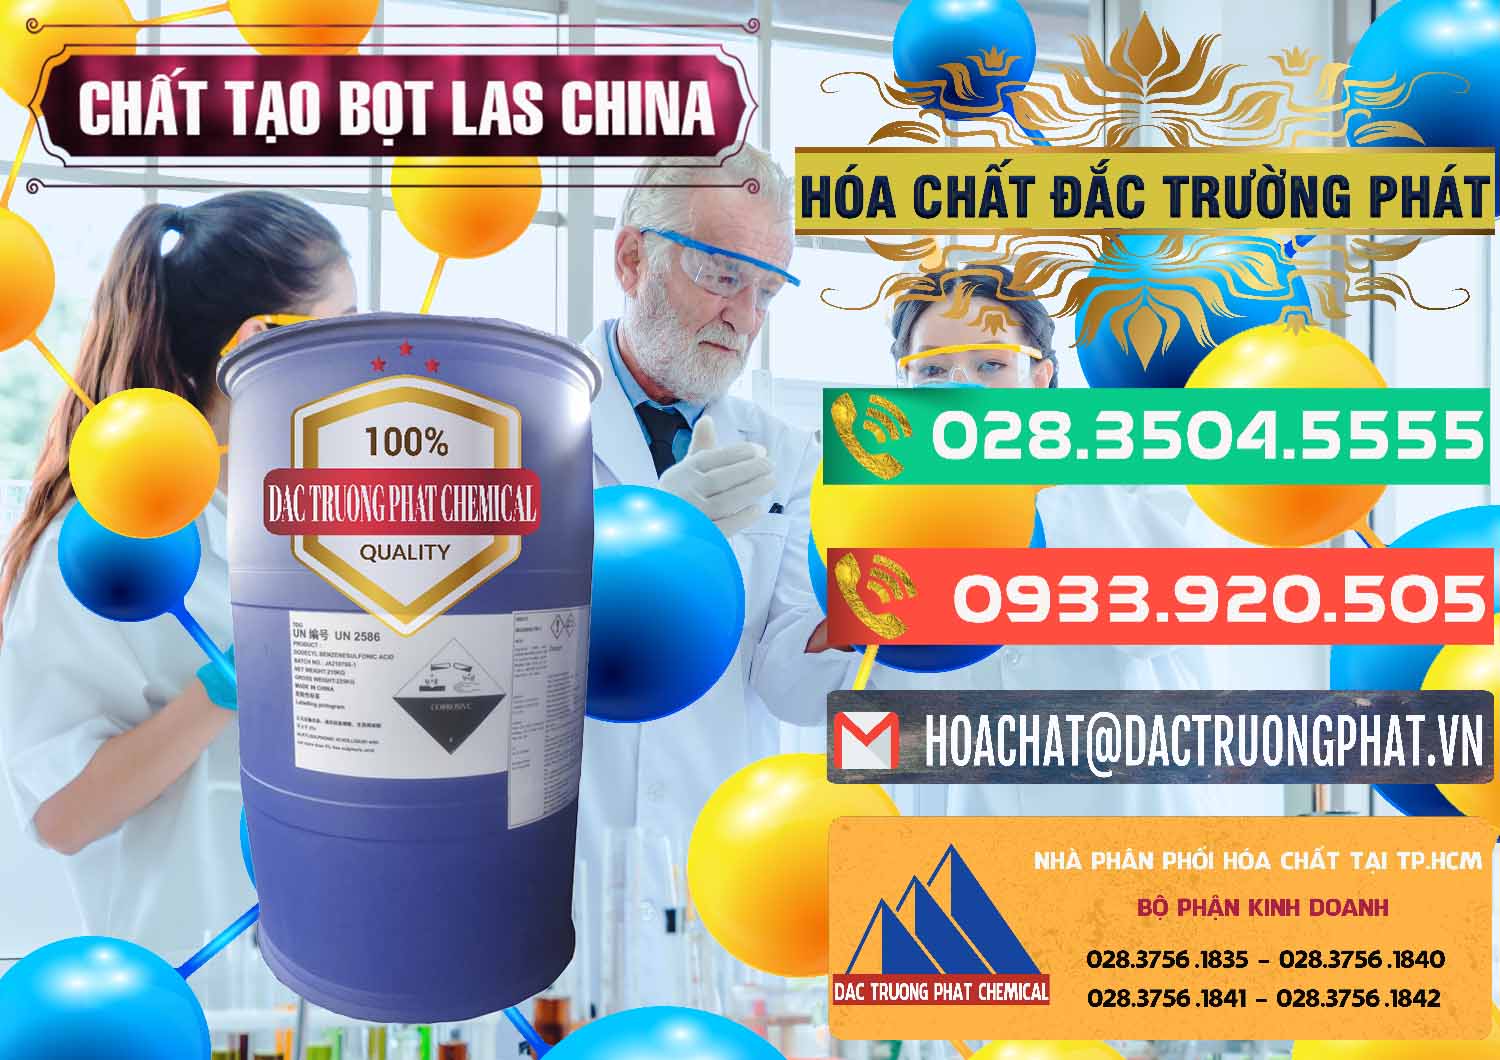 Cty chuyên bán ( cung ứng ) Chất tạo bọt Las Trung Quốc China - 0451 - Đơn vị chuyên nhập khẩu ( phân phối ) hóa chất tại TP.HCM - congtyhoachat.com.vn